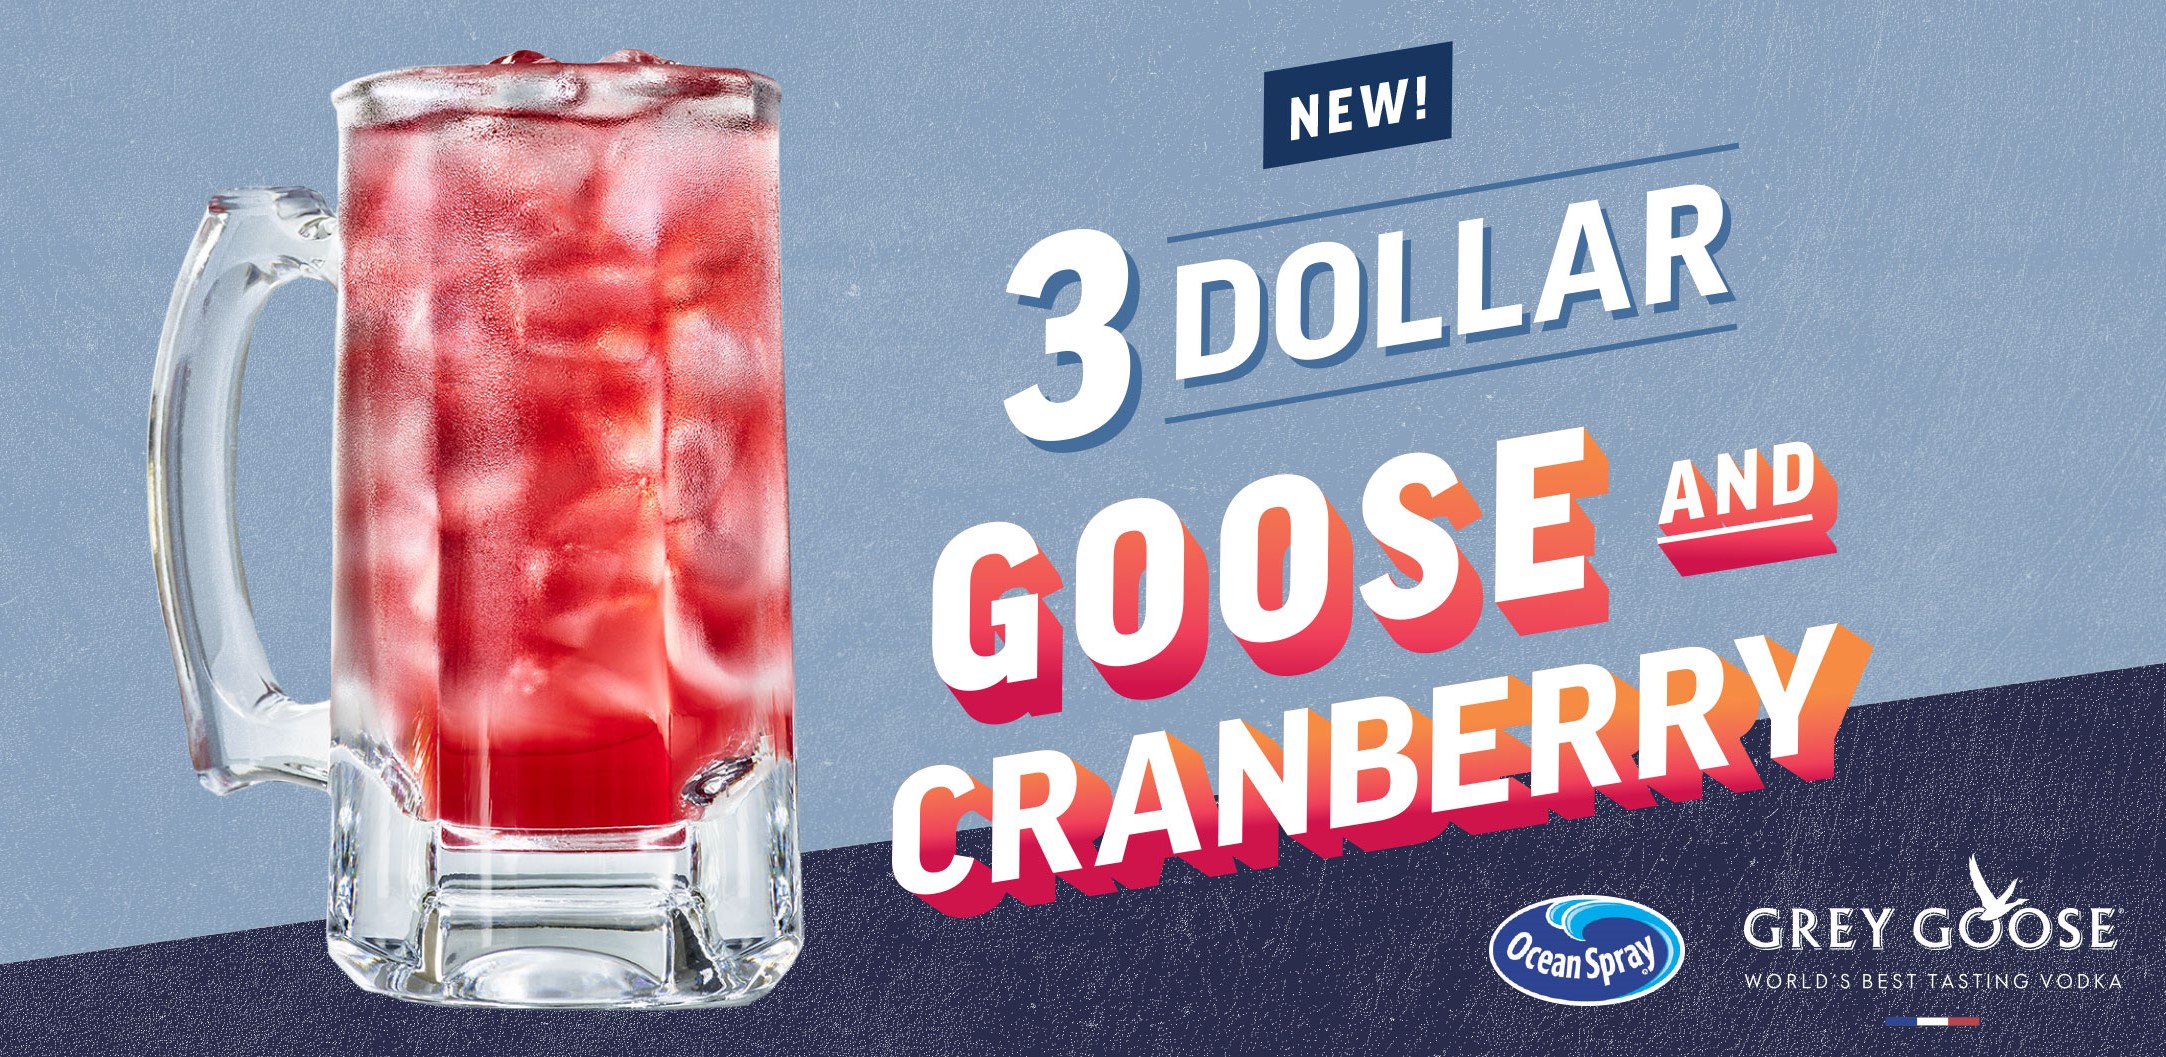 Applebee’s: $3 Goose & Cranberry